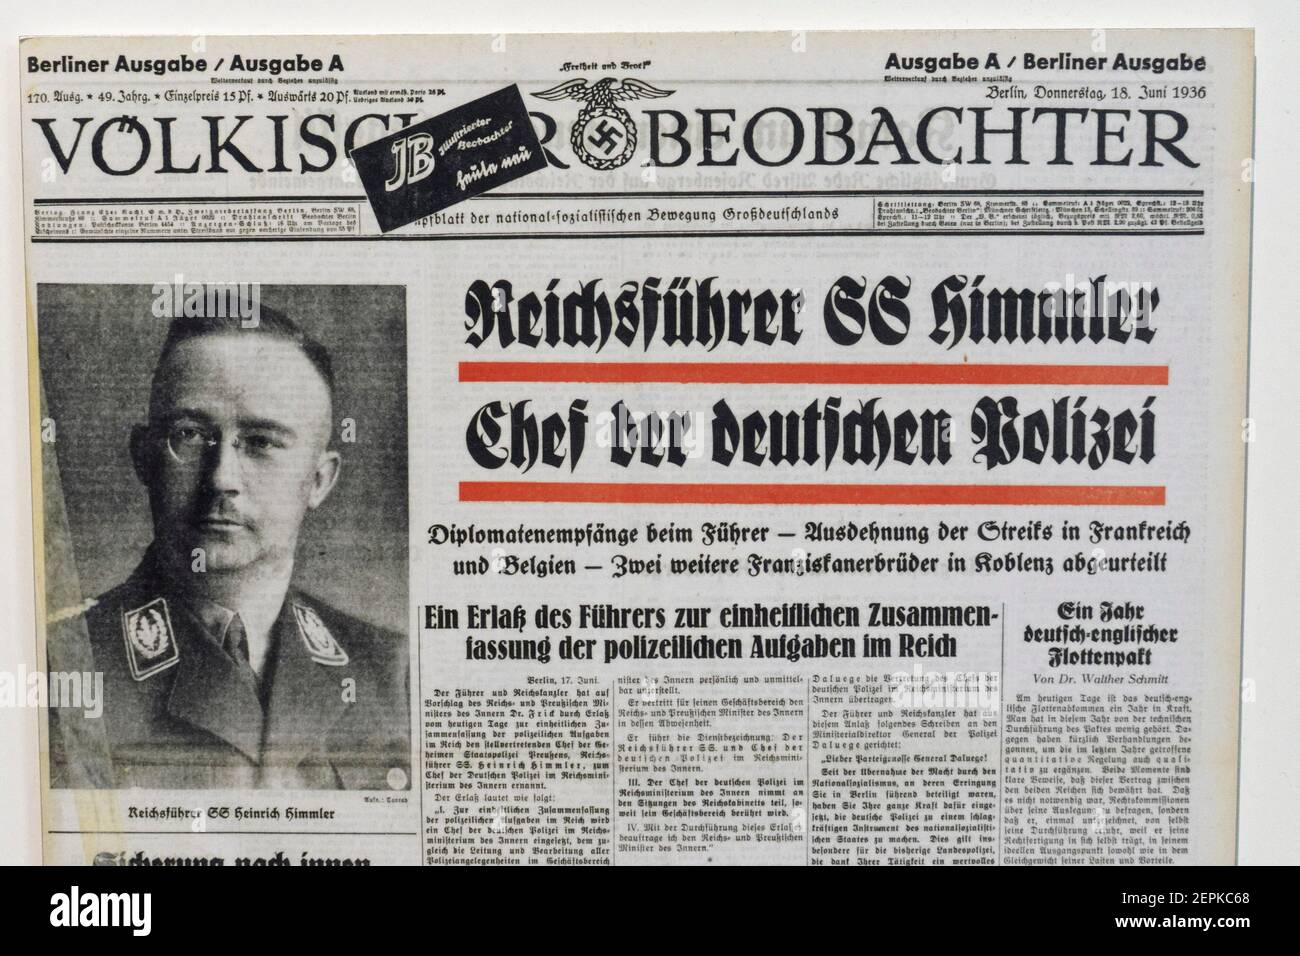 Der Volksische Beobachter offizielle nazi-Zeitung mit der Überschrift "Reichsführer SS Himmler ist Leiter der deutschen Polizei Stockfoto